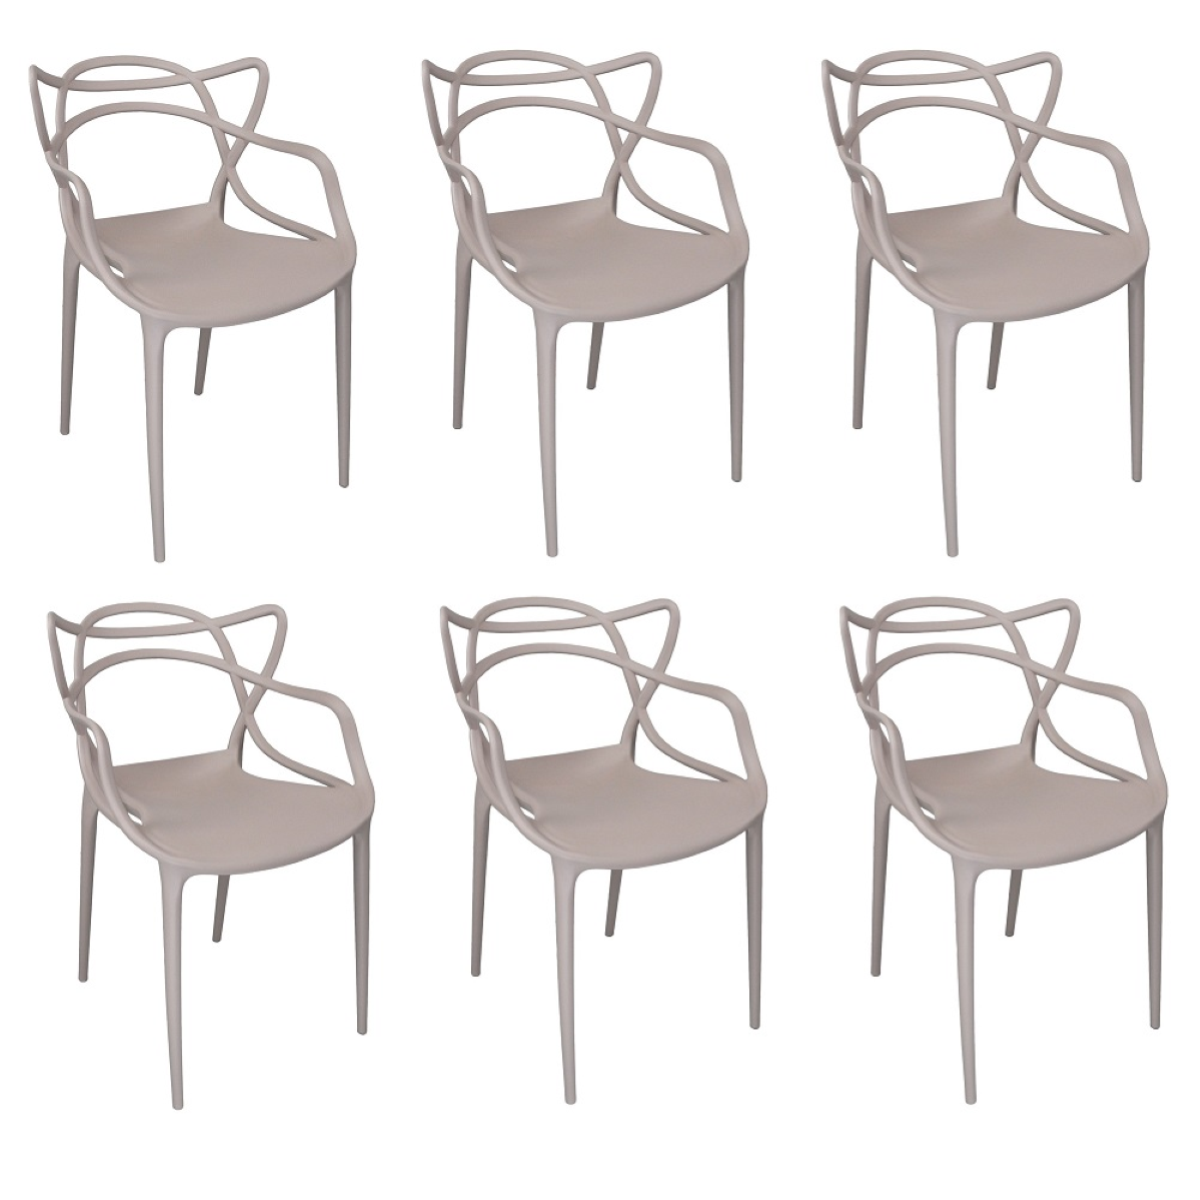 Sedia impilabile per casa giardino - MARK curve Tortora 6 sedie